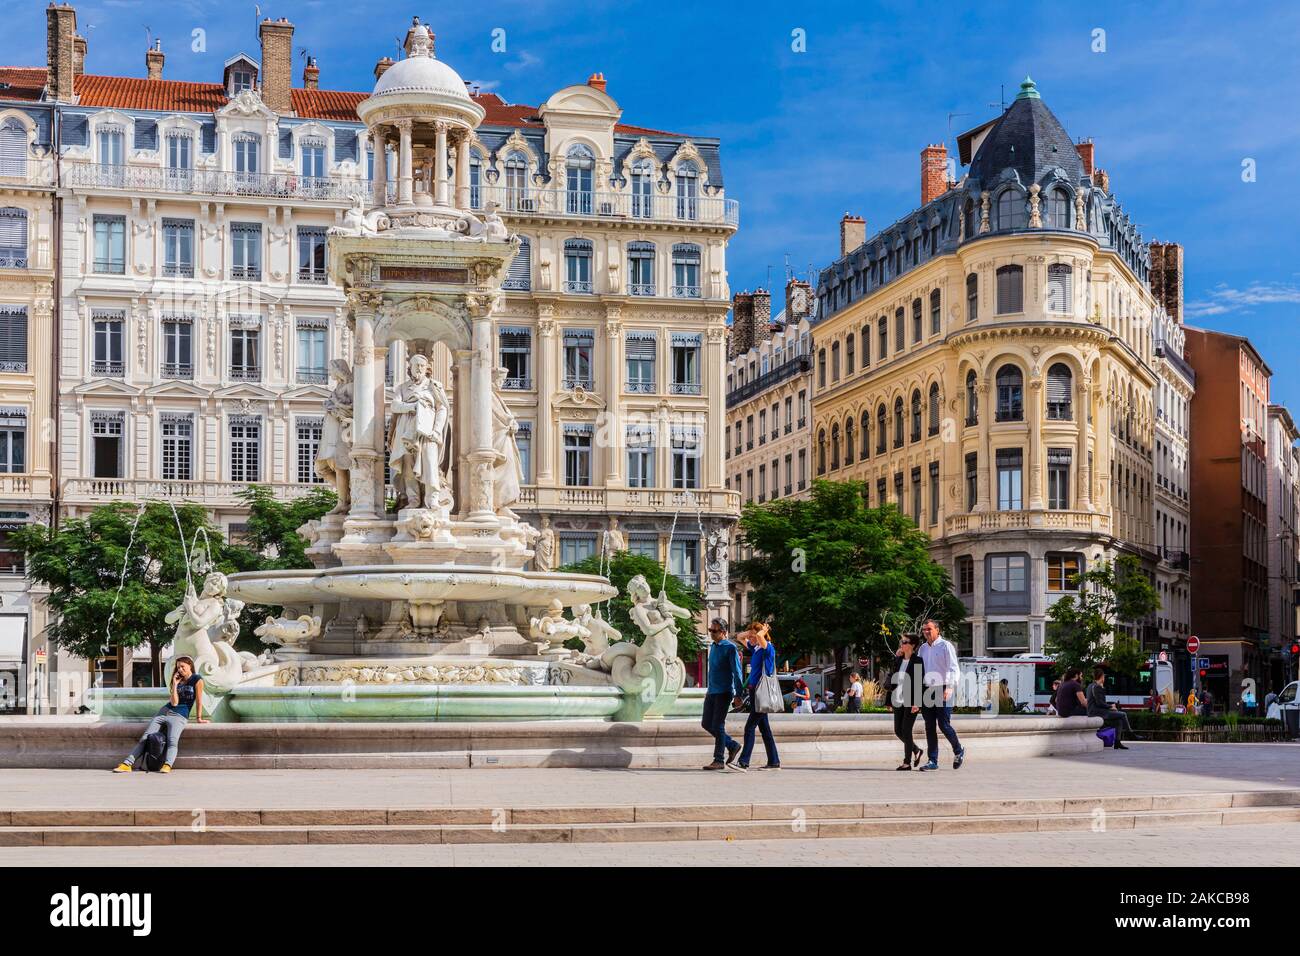 Francia, Ródano, Lyon, sitio histórico catalogado como Patrimonio Mundial por la UNESCO, Cordeliers district, la fuente de la Place des Jacobins Foto de stock